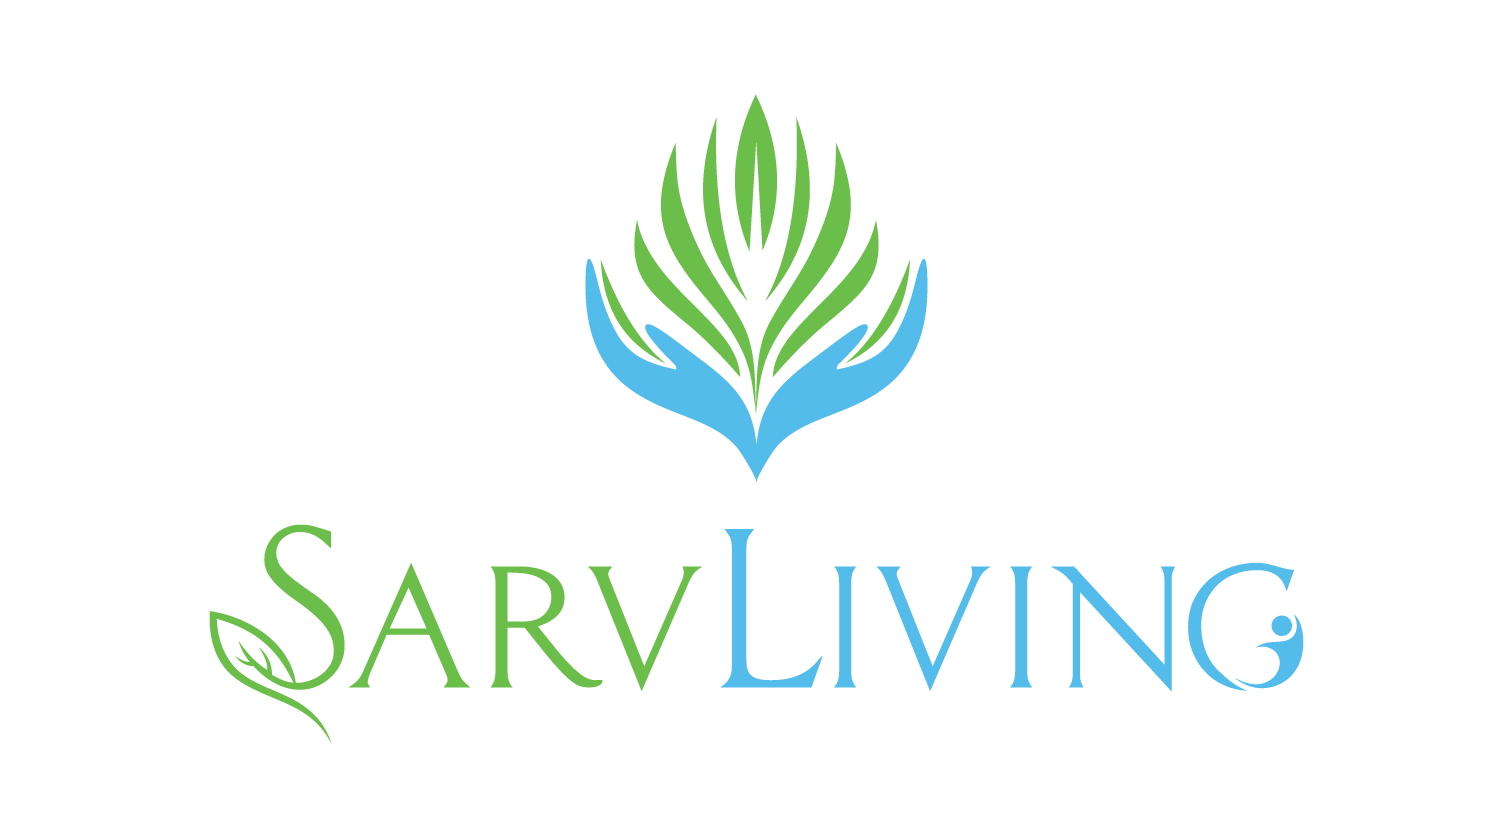 Sarvliving.com